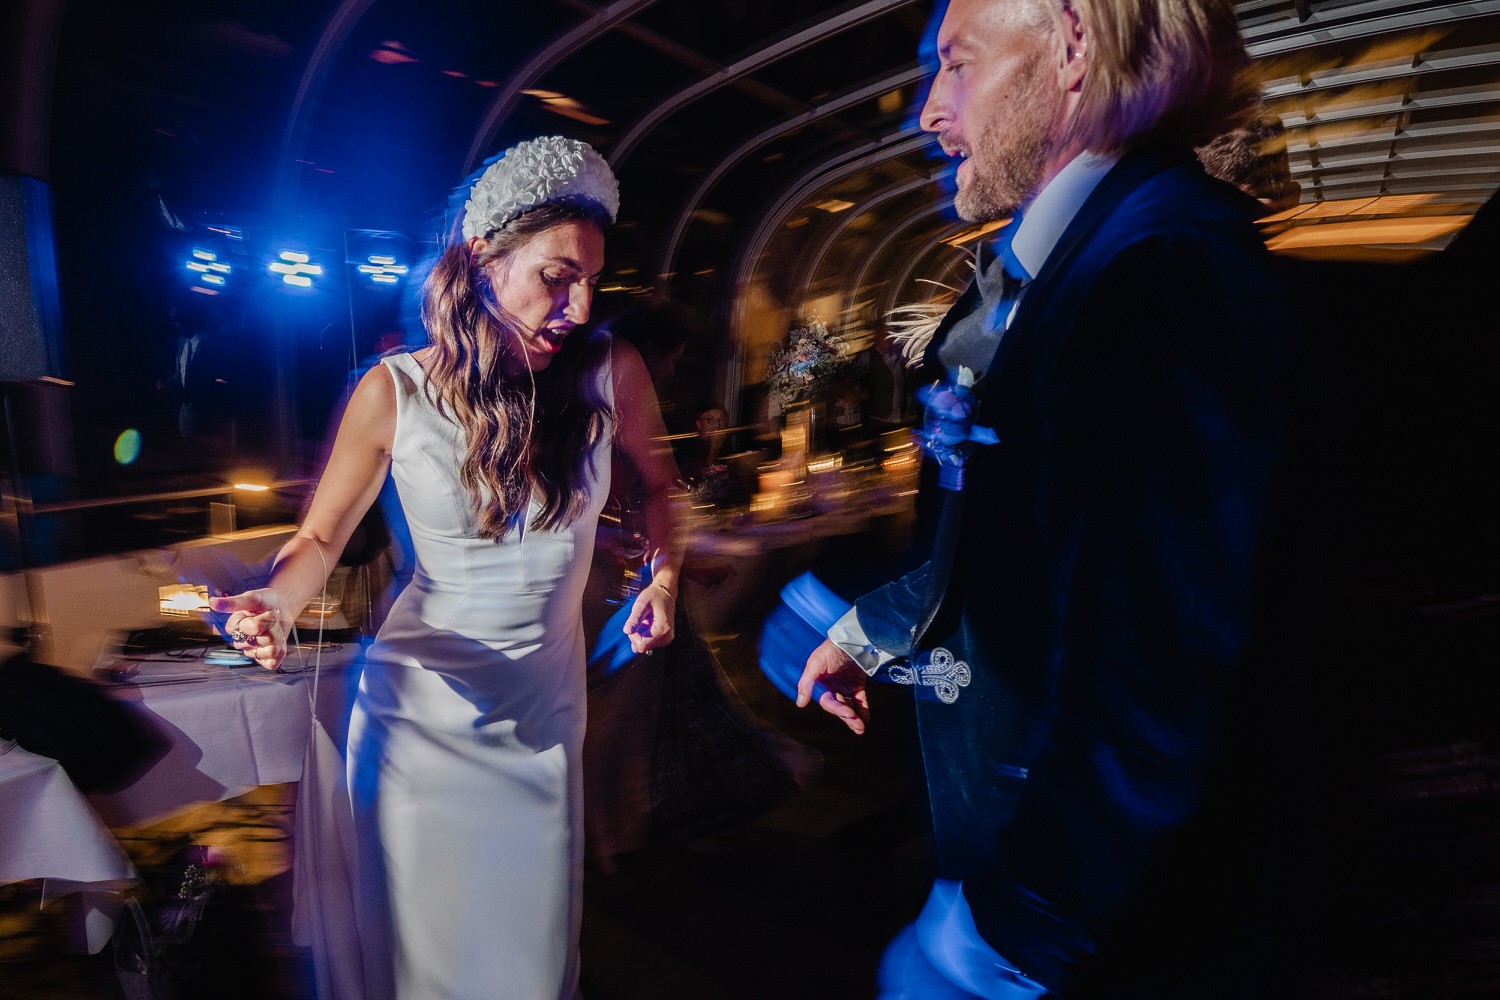 Hochzeit auf dem Cabrioshiff MS Sunliner, Passau, das Brautpaar tanzt mit den Gästen